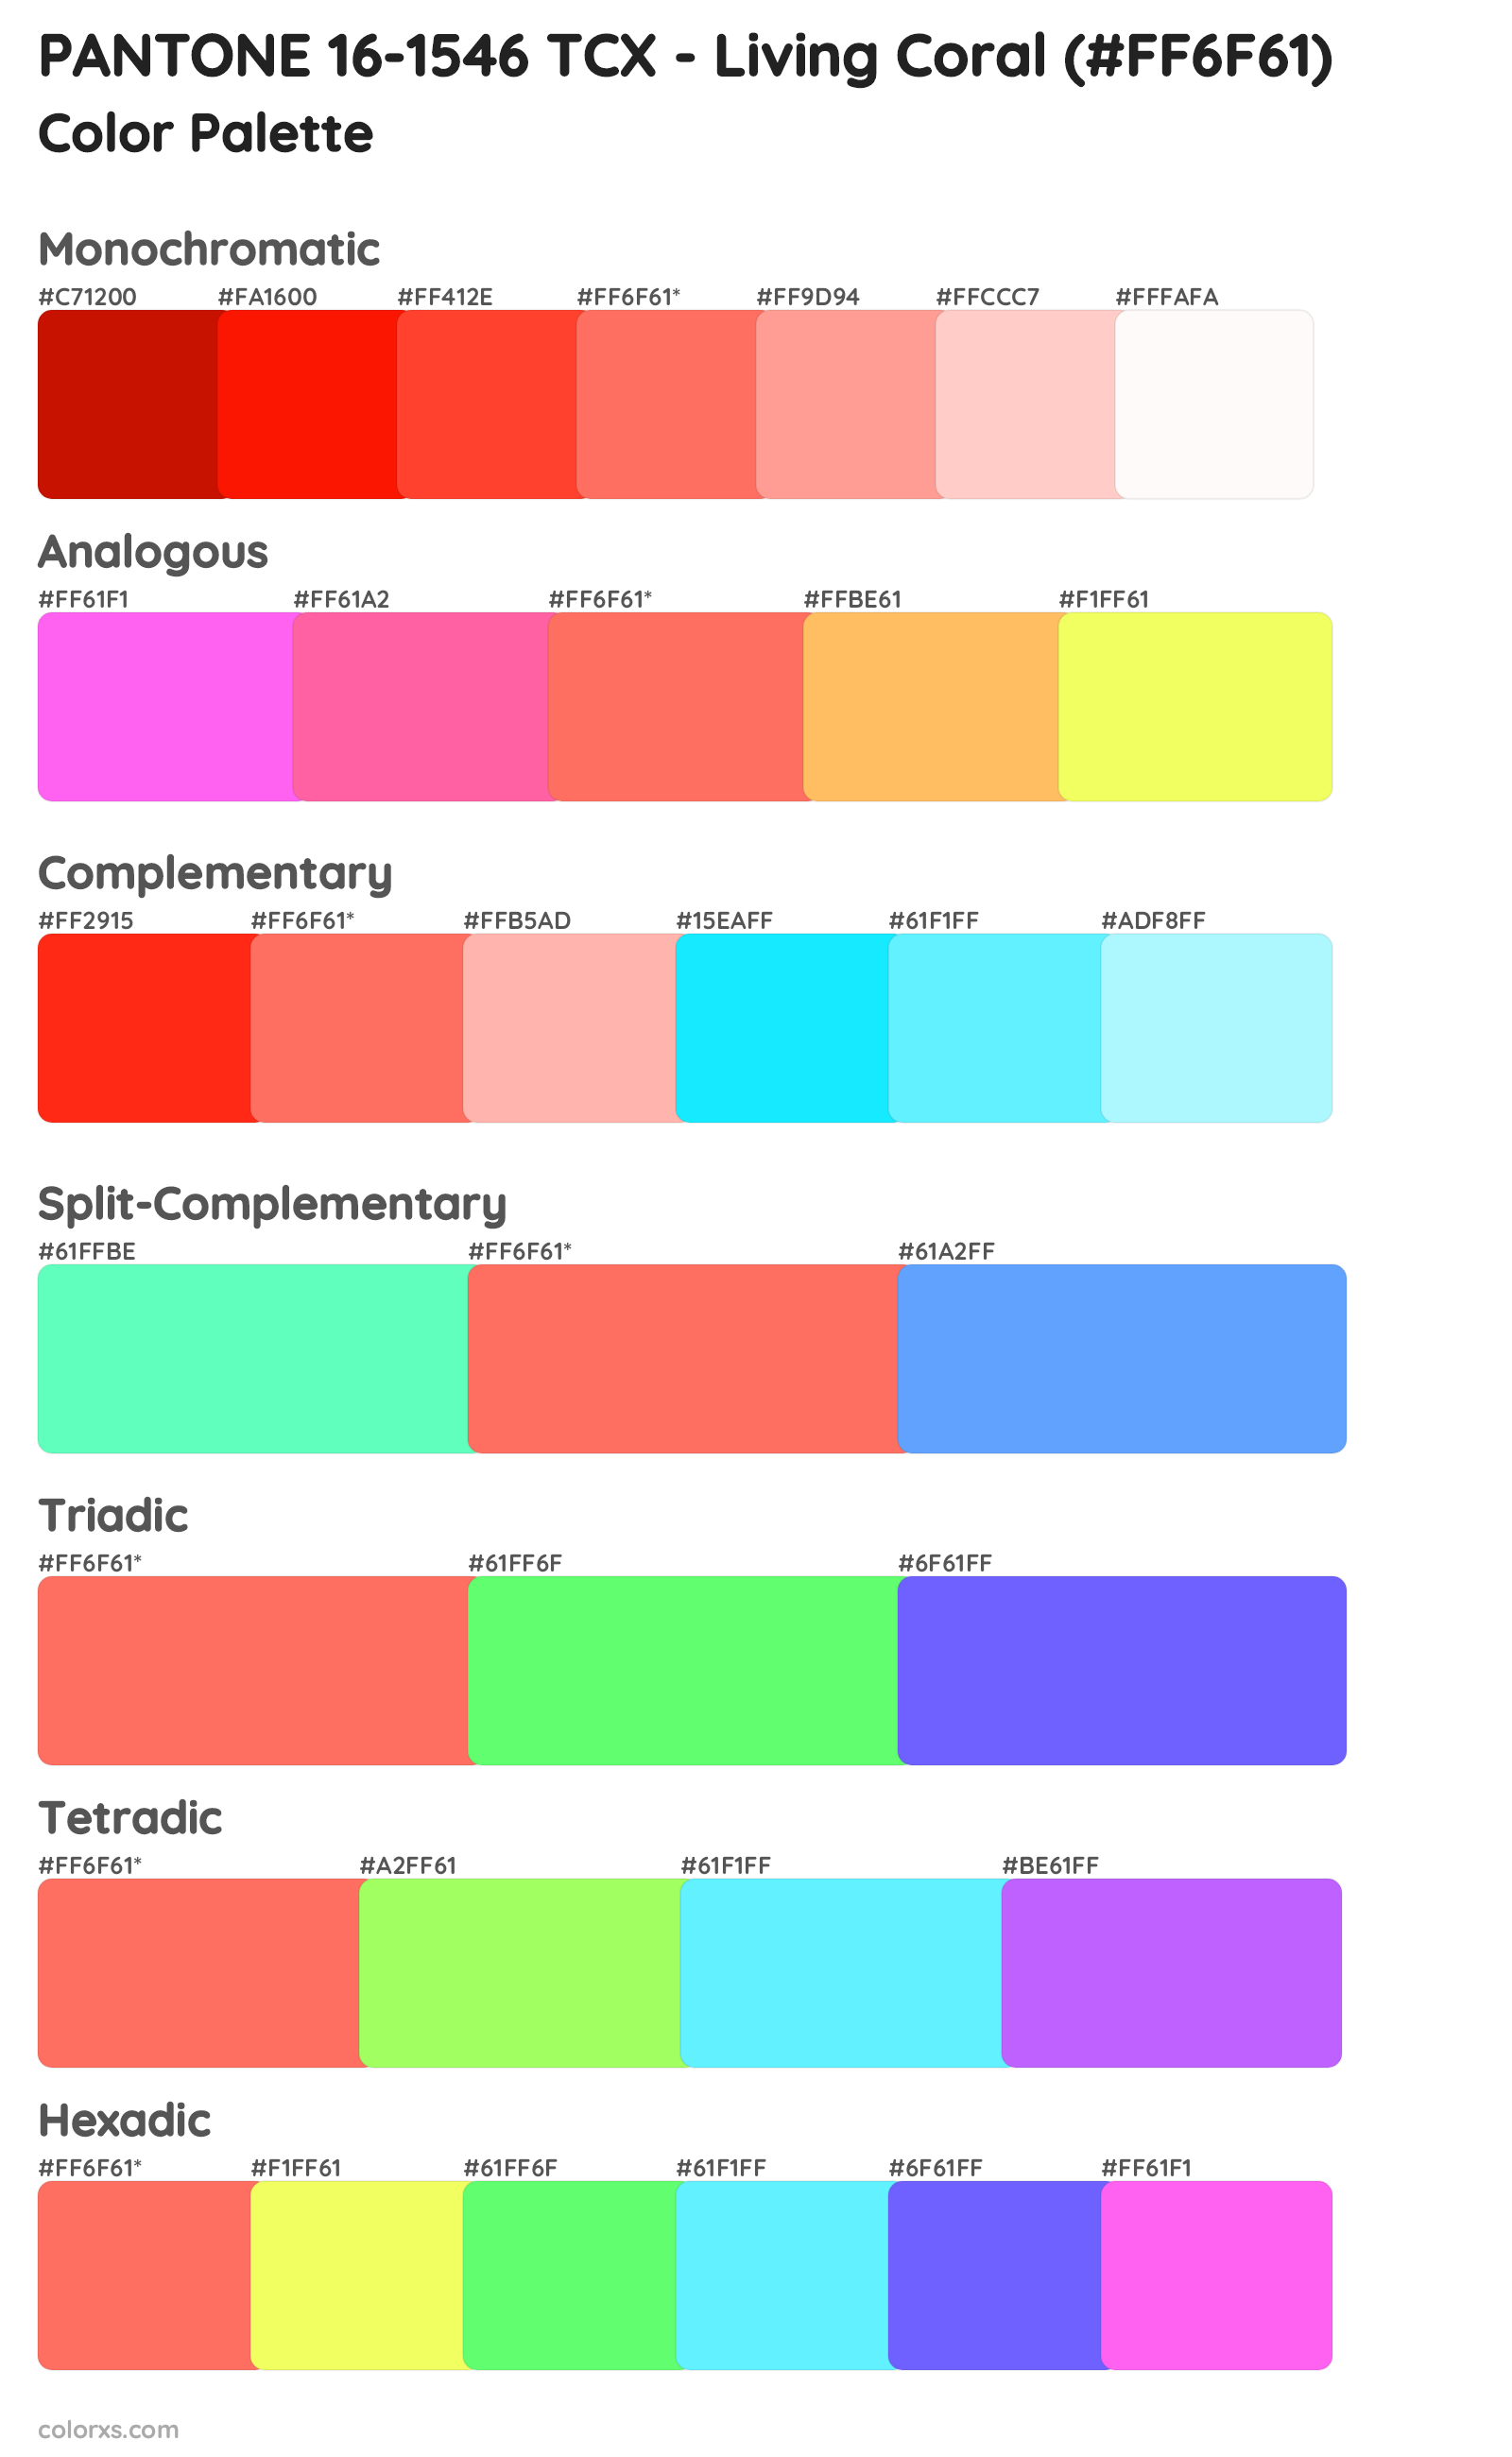 PANTONE 16-1546 TCX - Living Coral Color Scheme Palettes